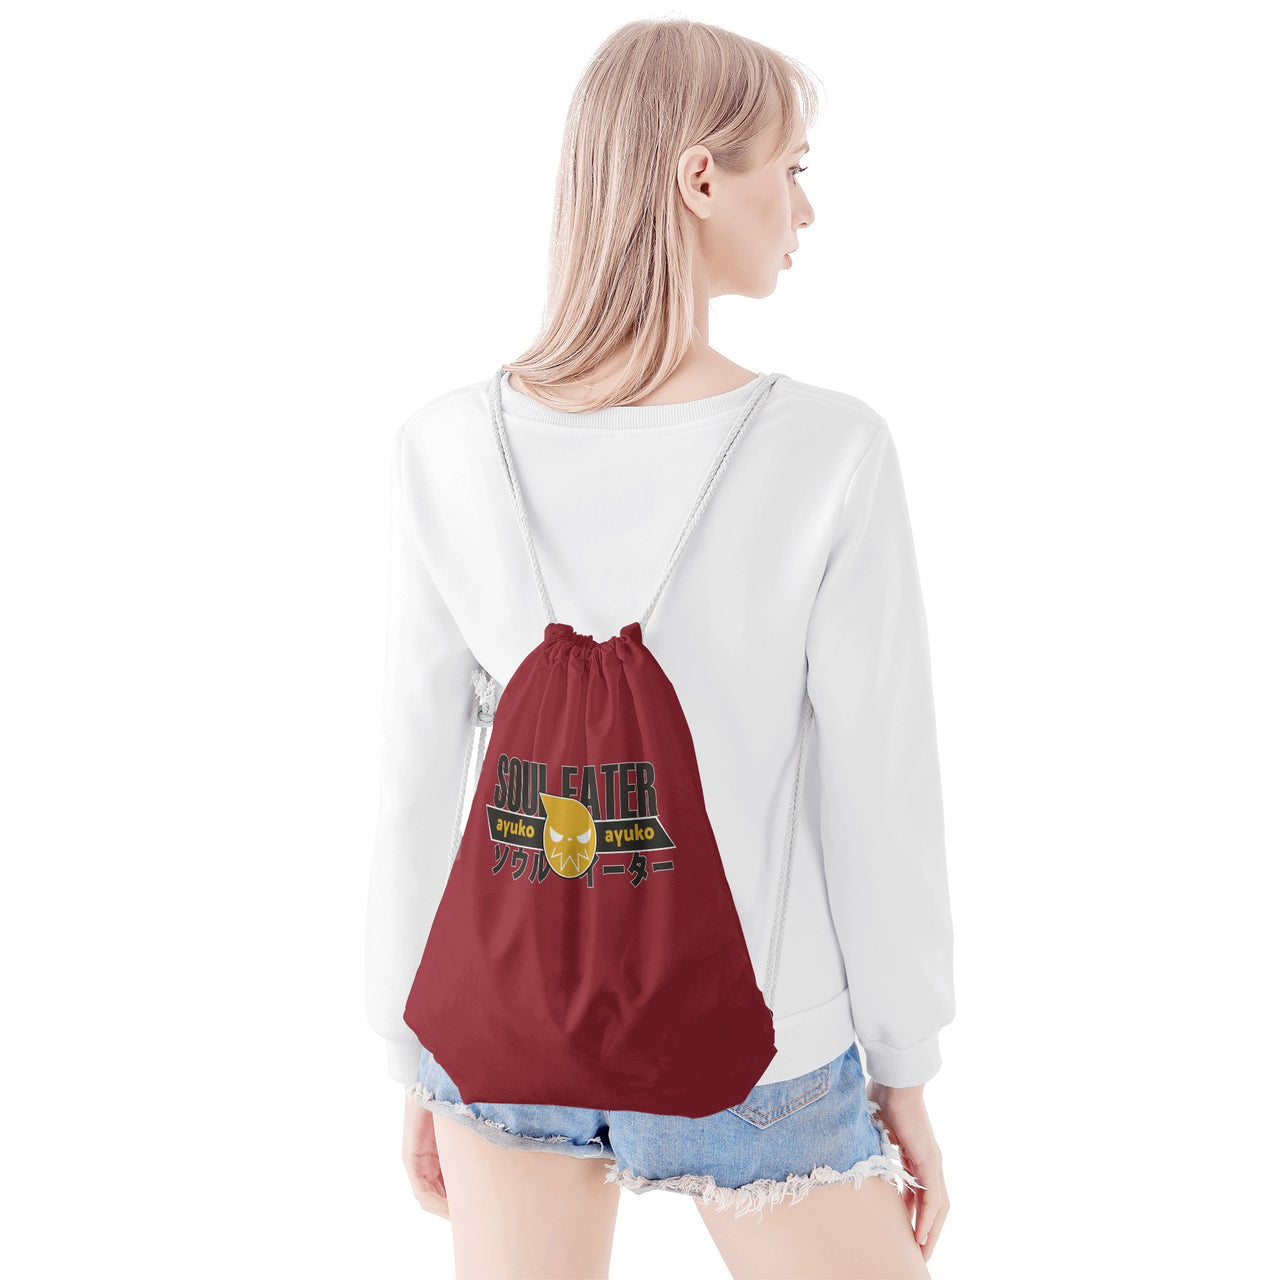 Soul Eater Anime Drawstring Bag